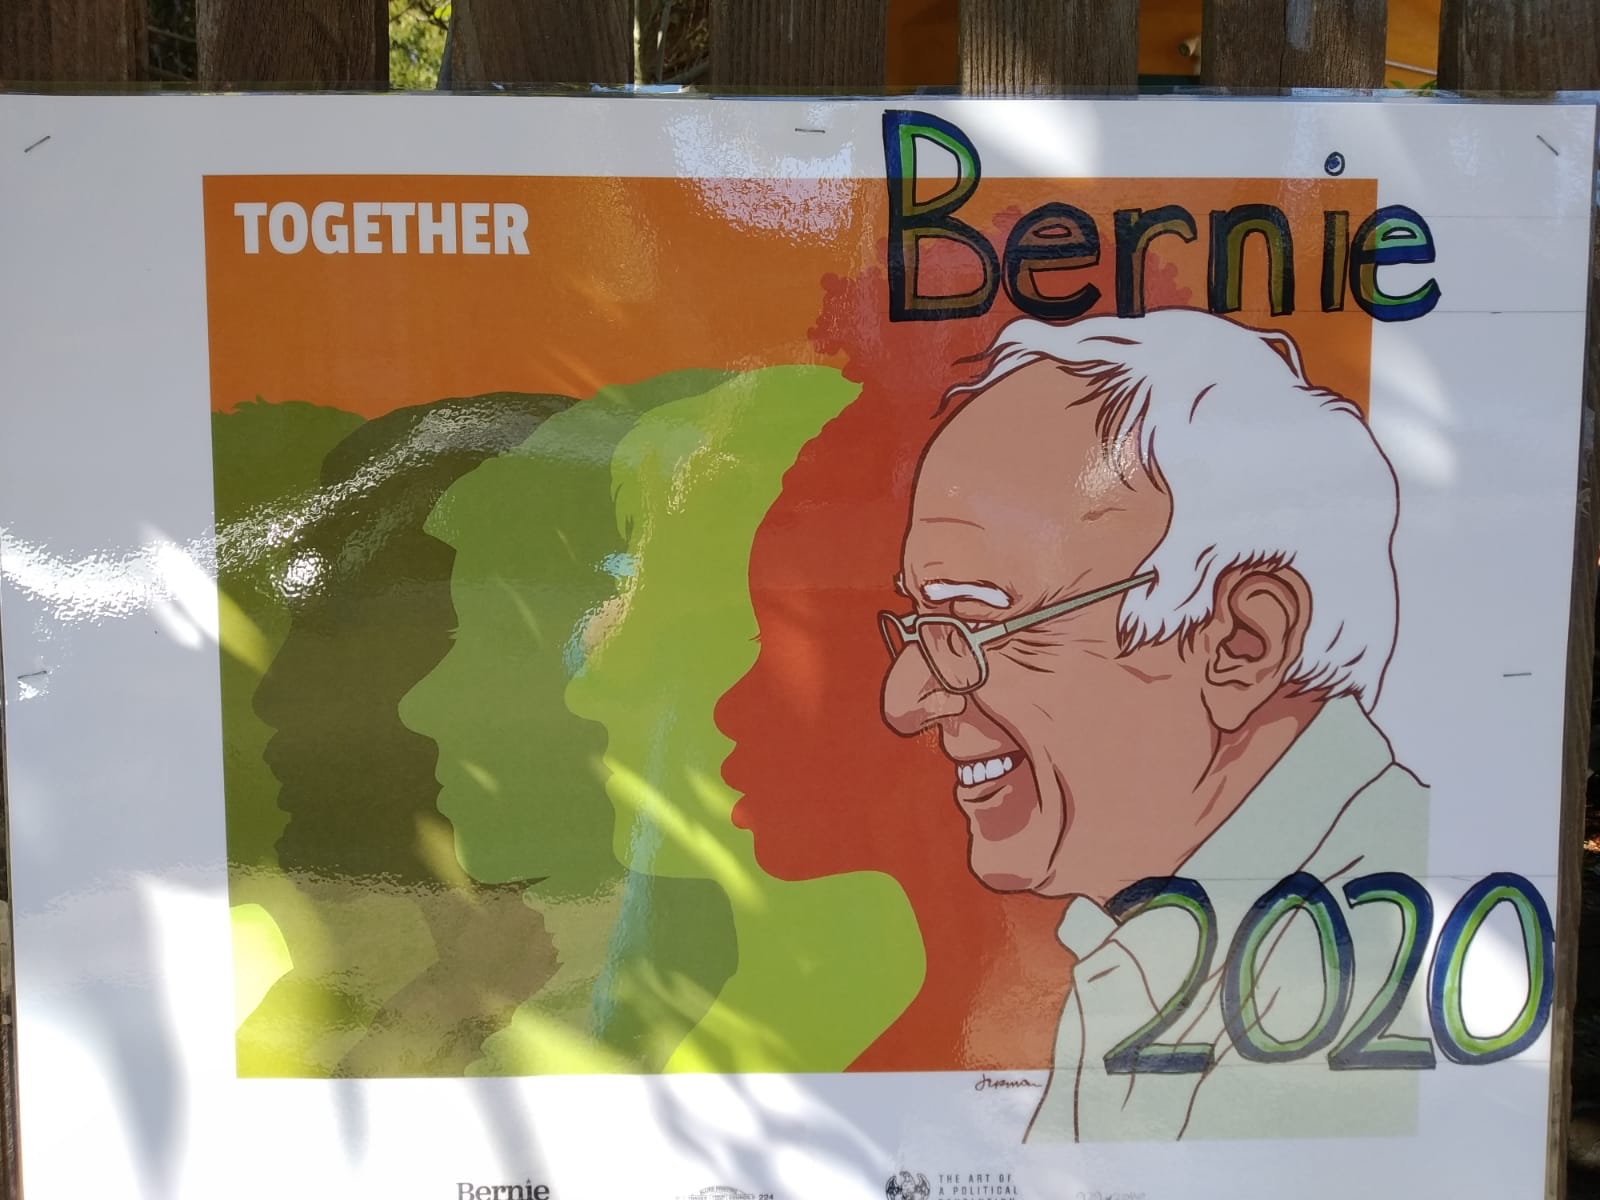 Berkeley sokaklarından bir Bernie Sanders afişi.